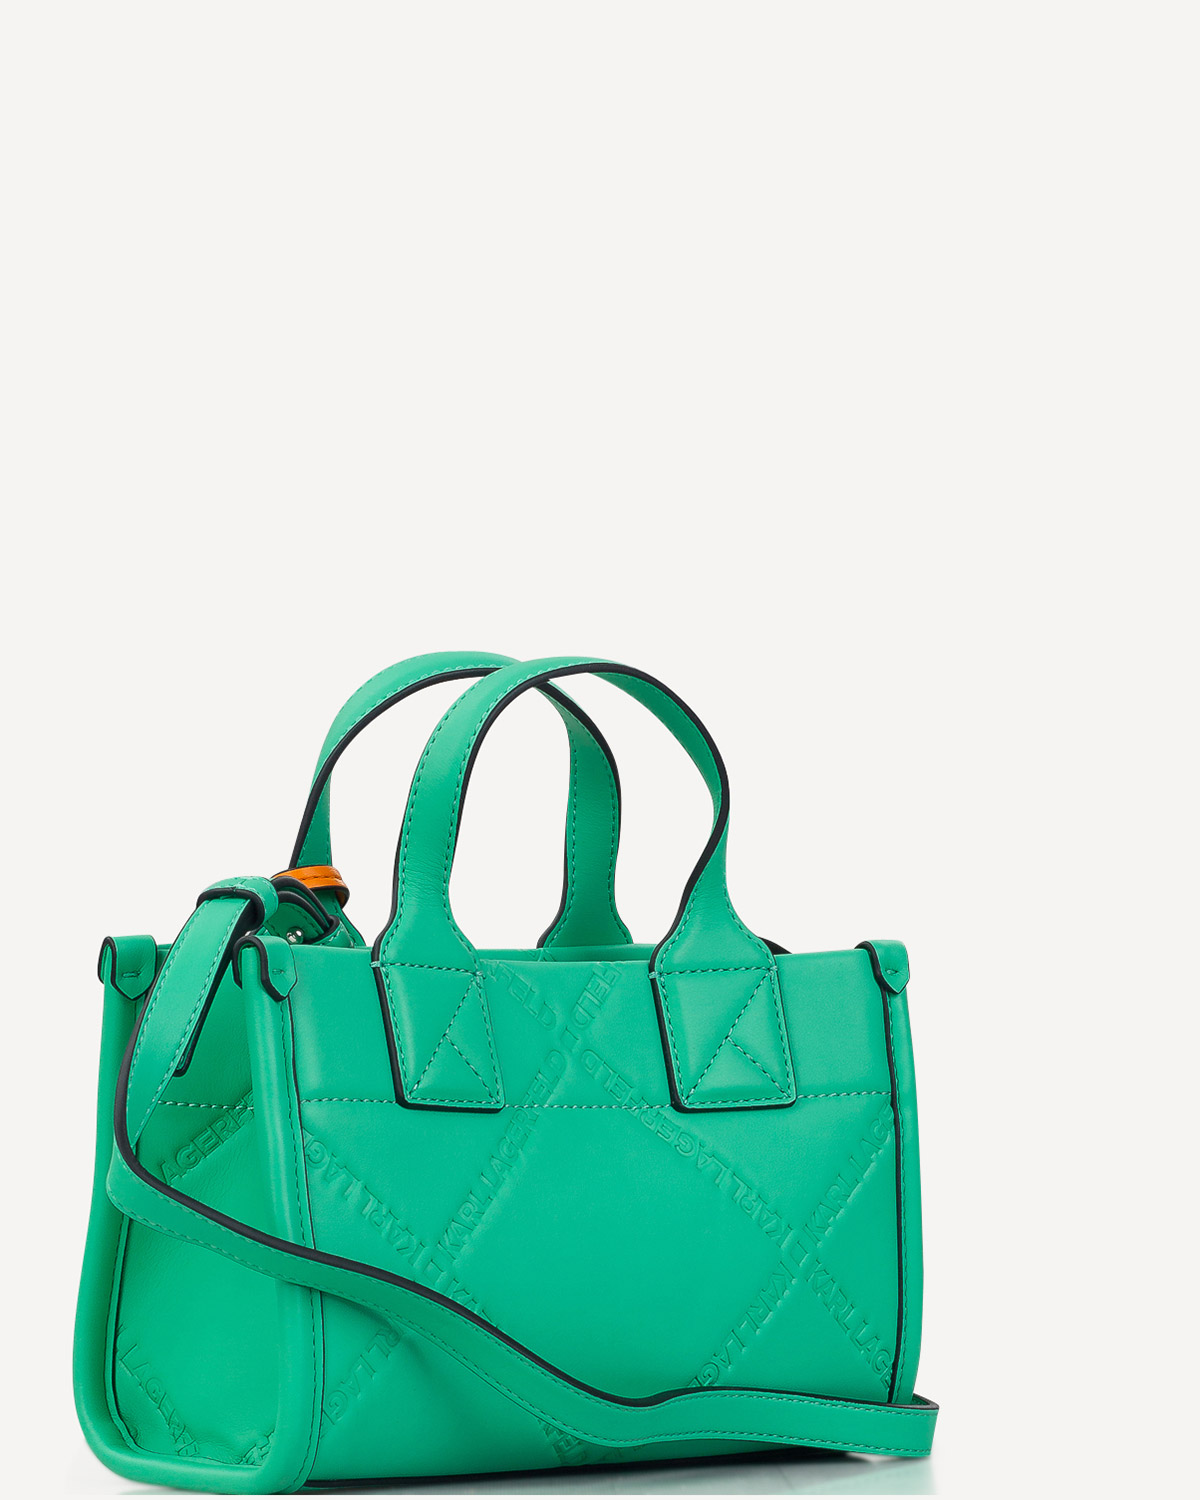 Γυναίκα - Mini Bags - Karl Lagerfeld Πράσινο